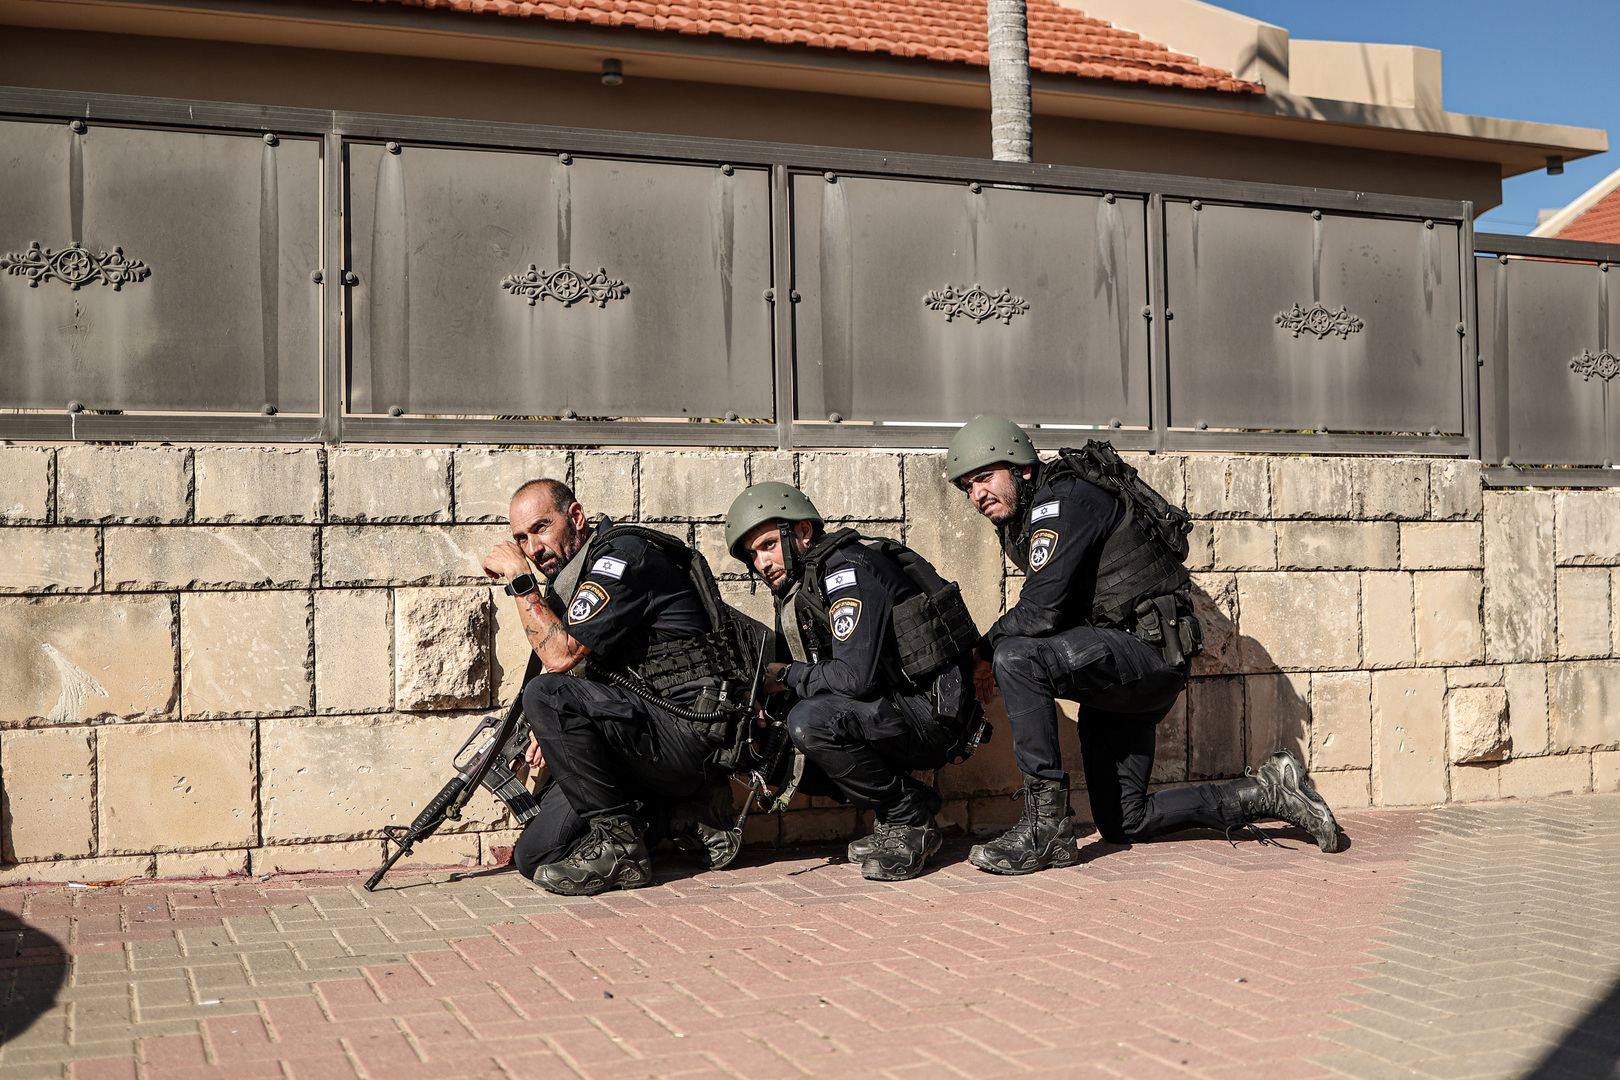 مشاهد توثق اقتحام القوات الإسرائيلية مبنى في بلدة جبع شمال شرق القدس (فيديو)